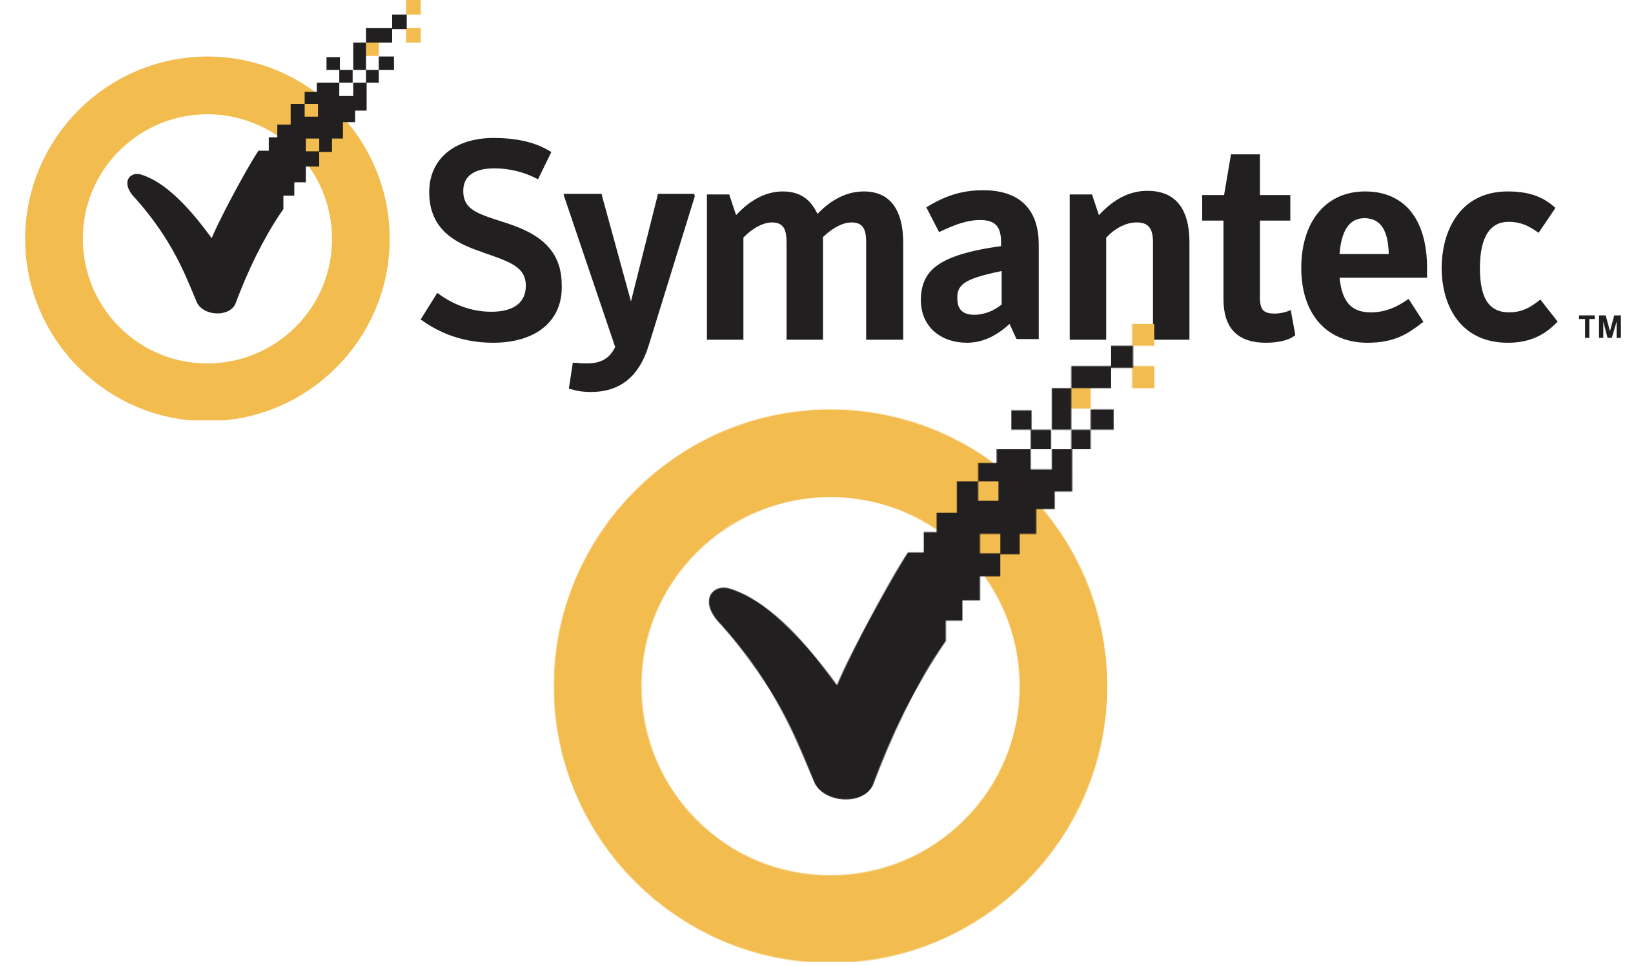 Symantec Antivirus